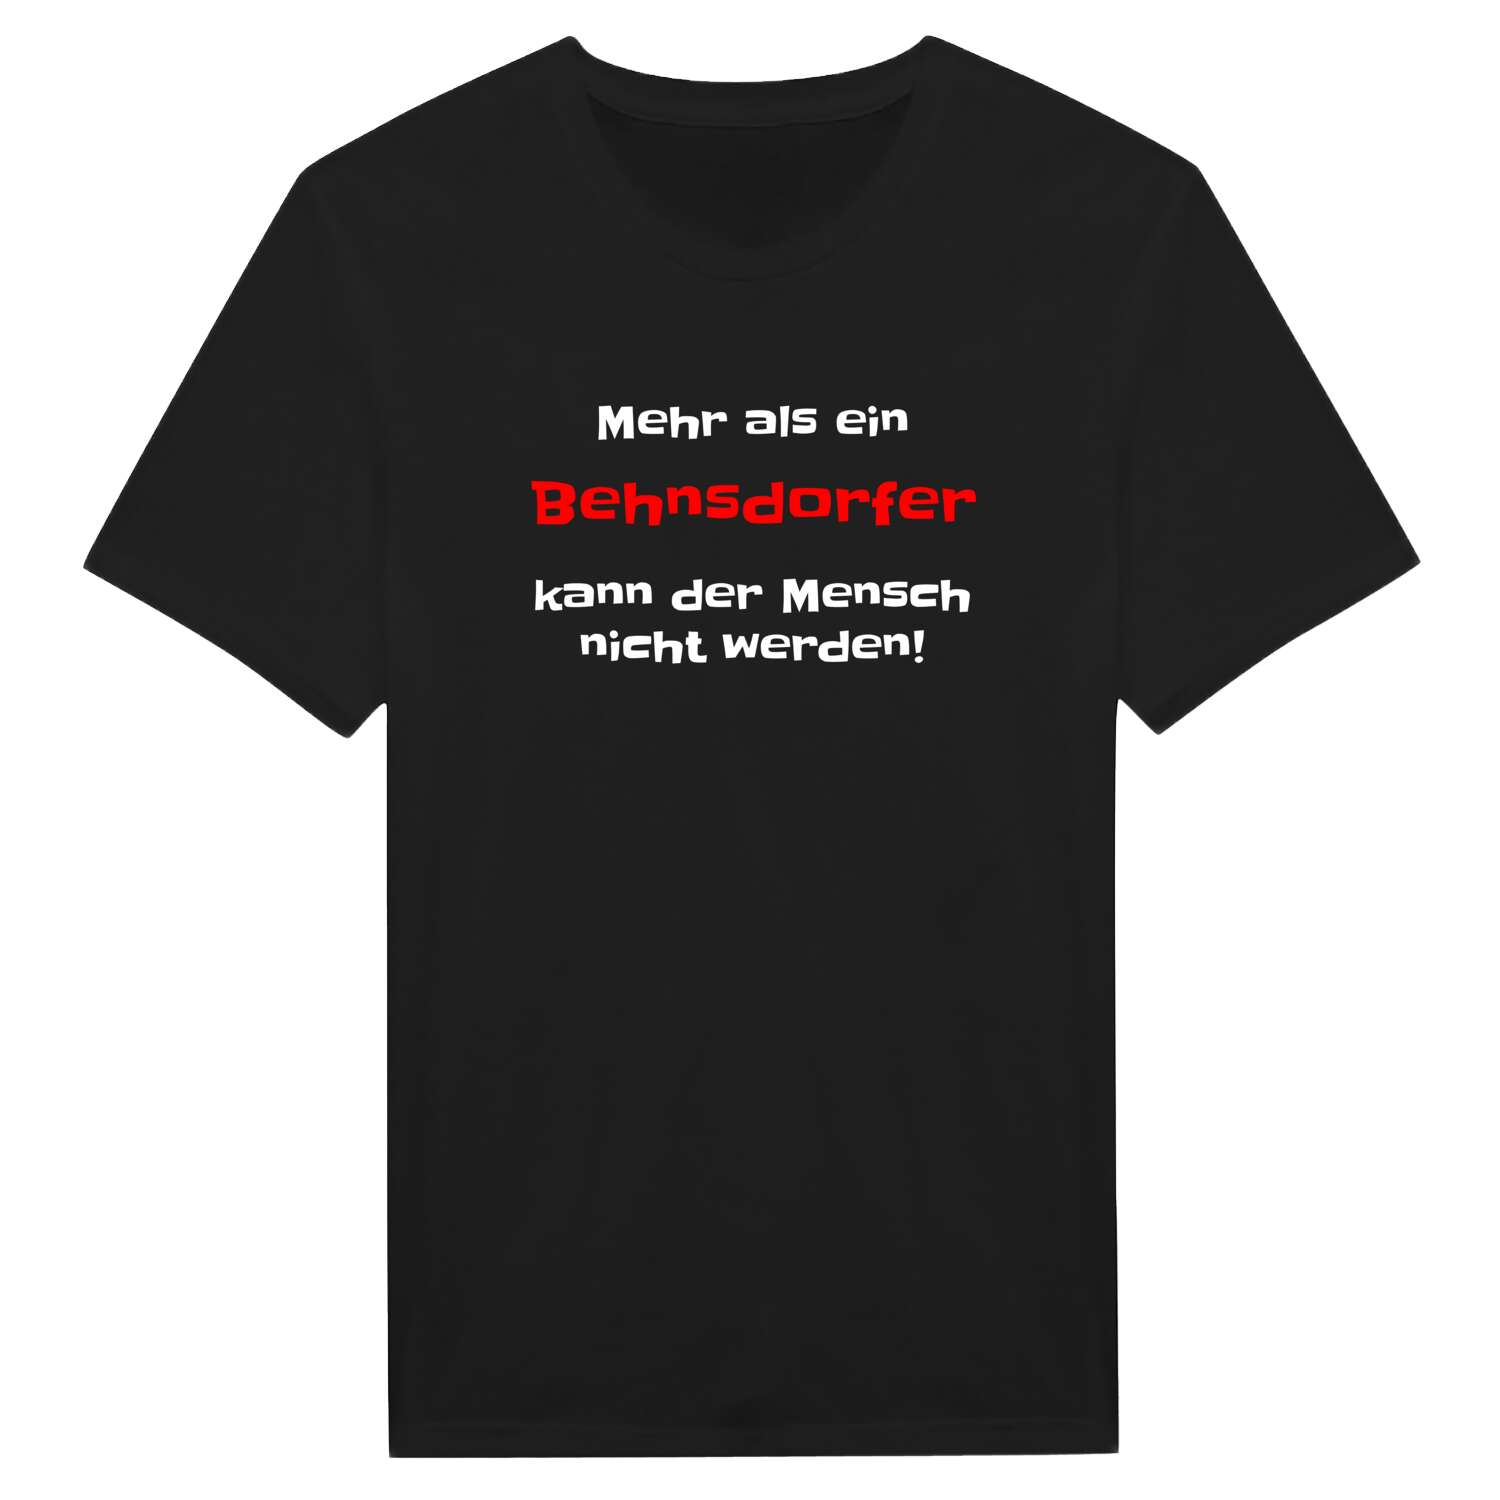 Behnsdorf T-Shirt »Mehr als ein«